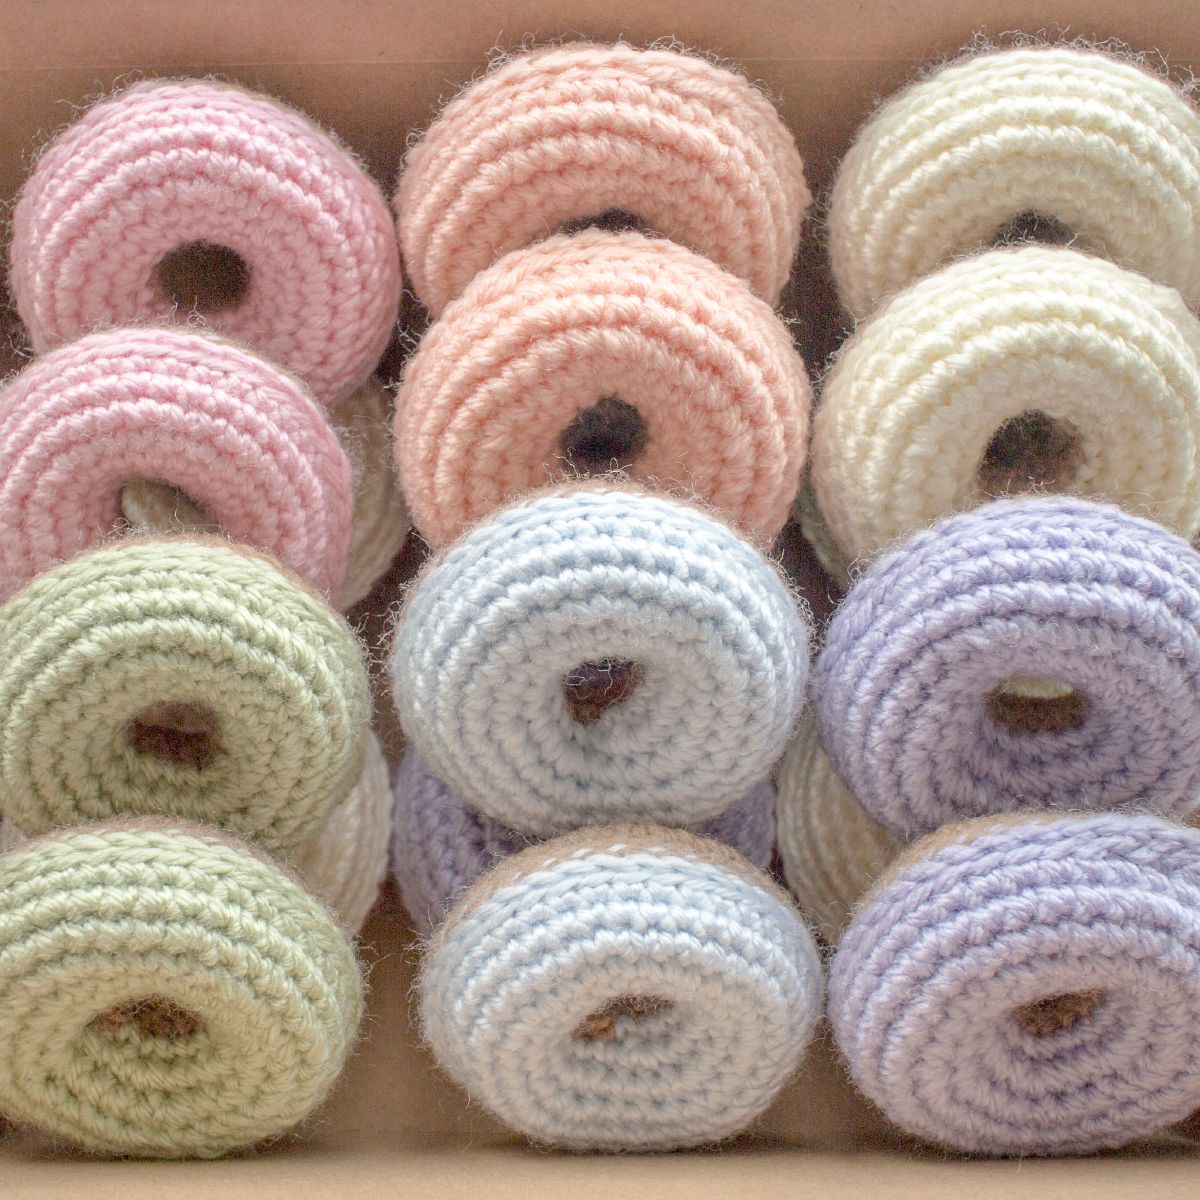 Amigurumi Donuts Free Crochet Pattern